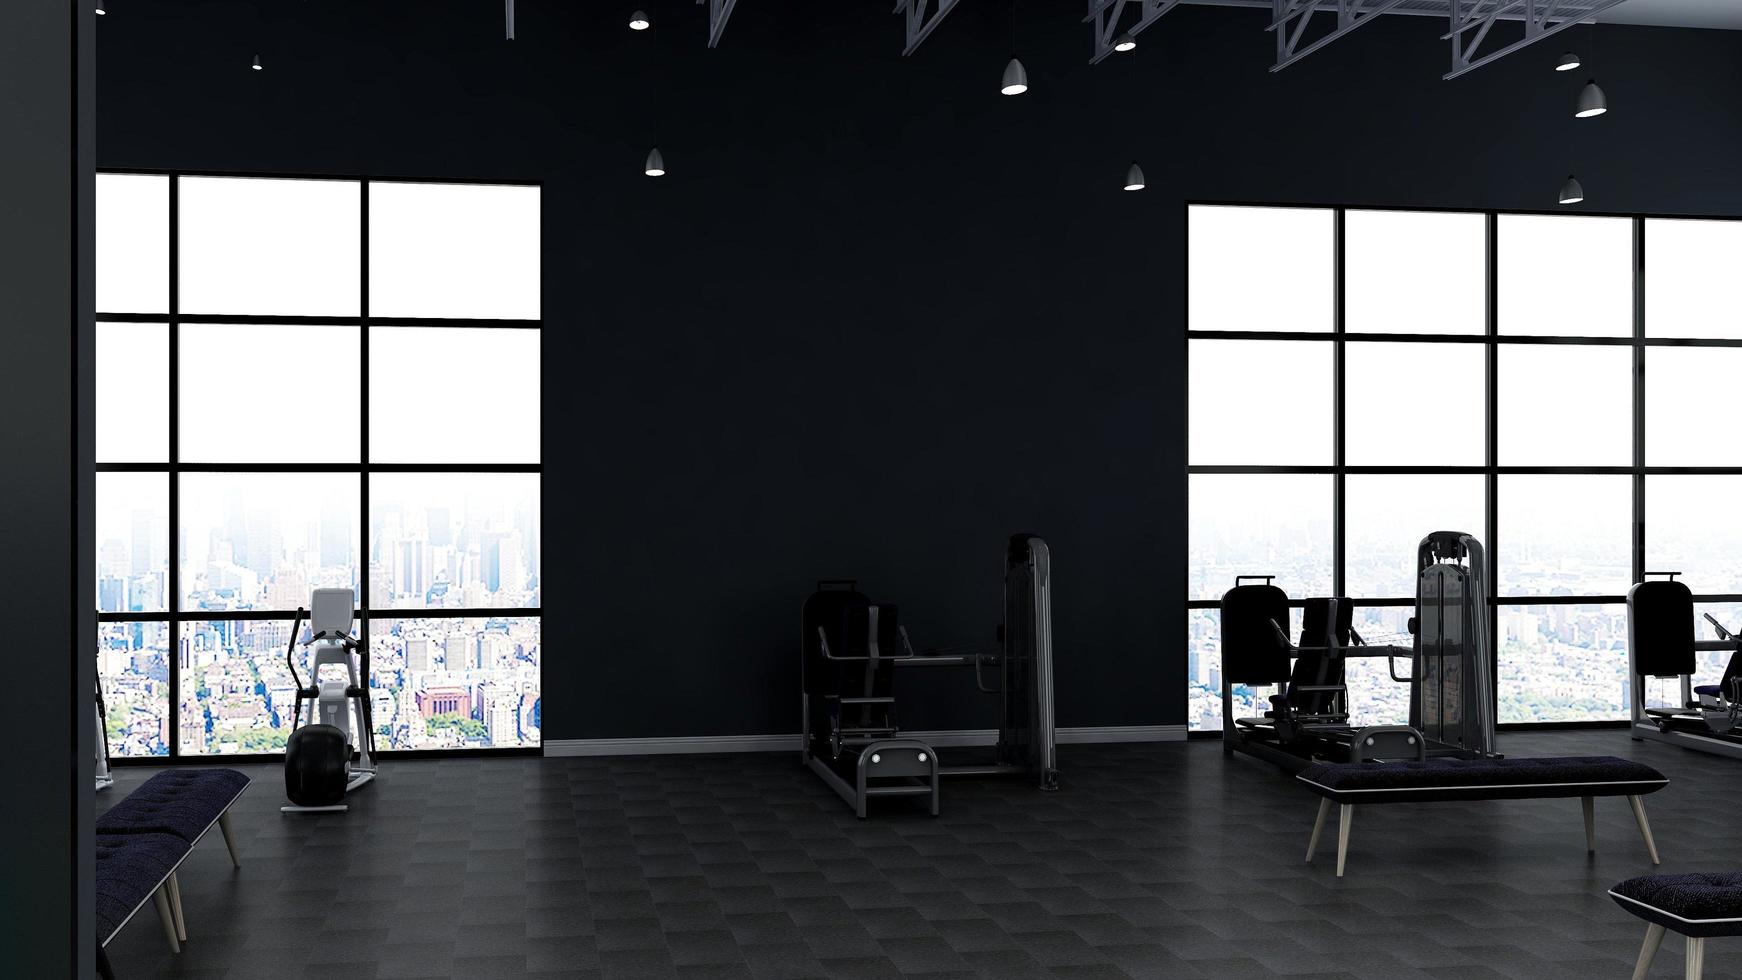 rendering 3d moderno modello di parete della sala fitness o palestra foto